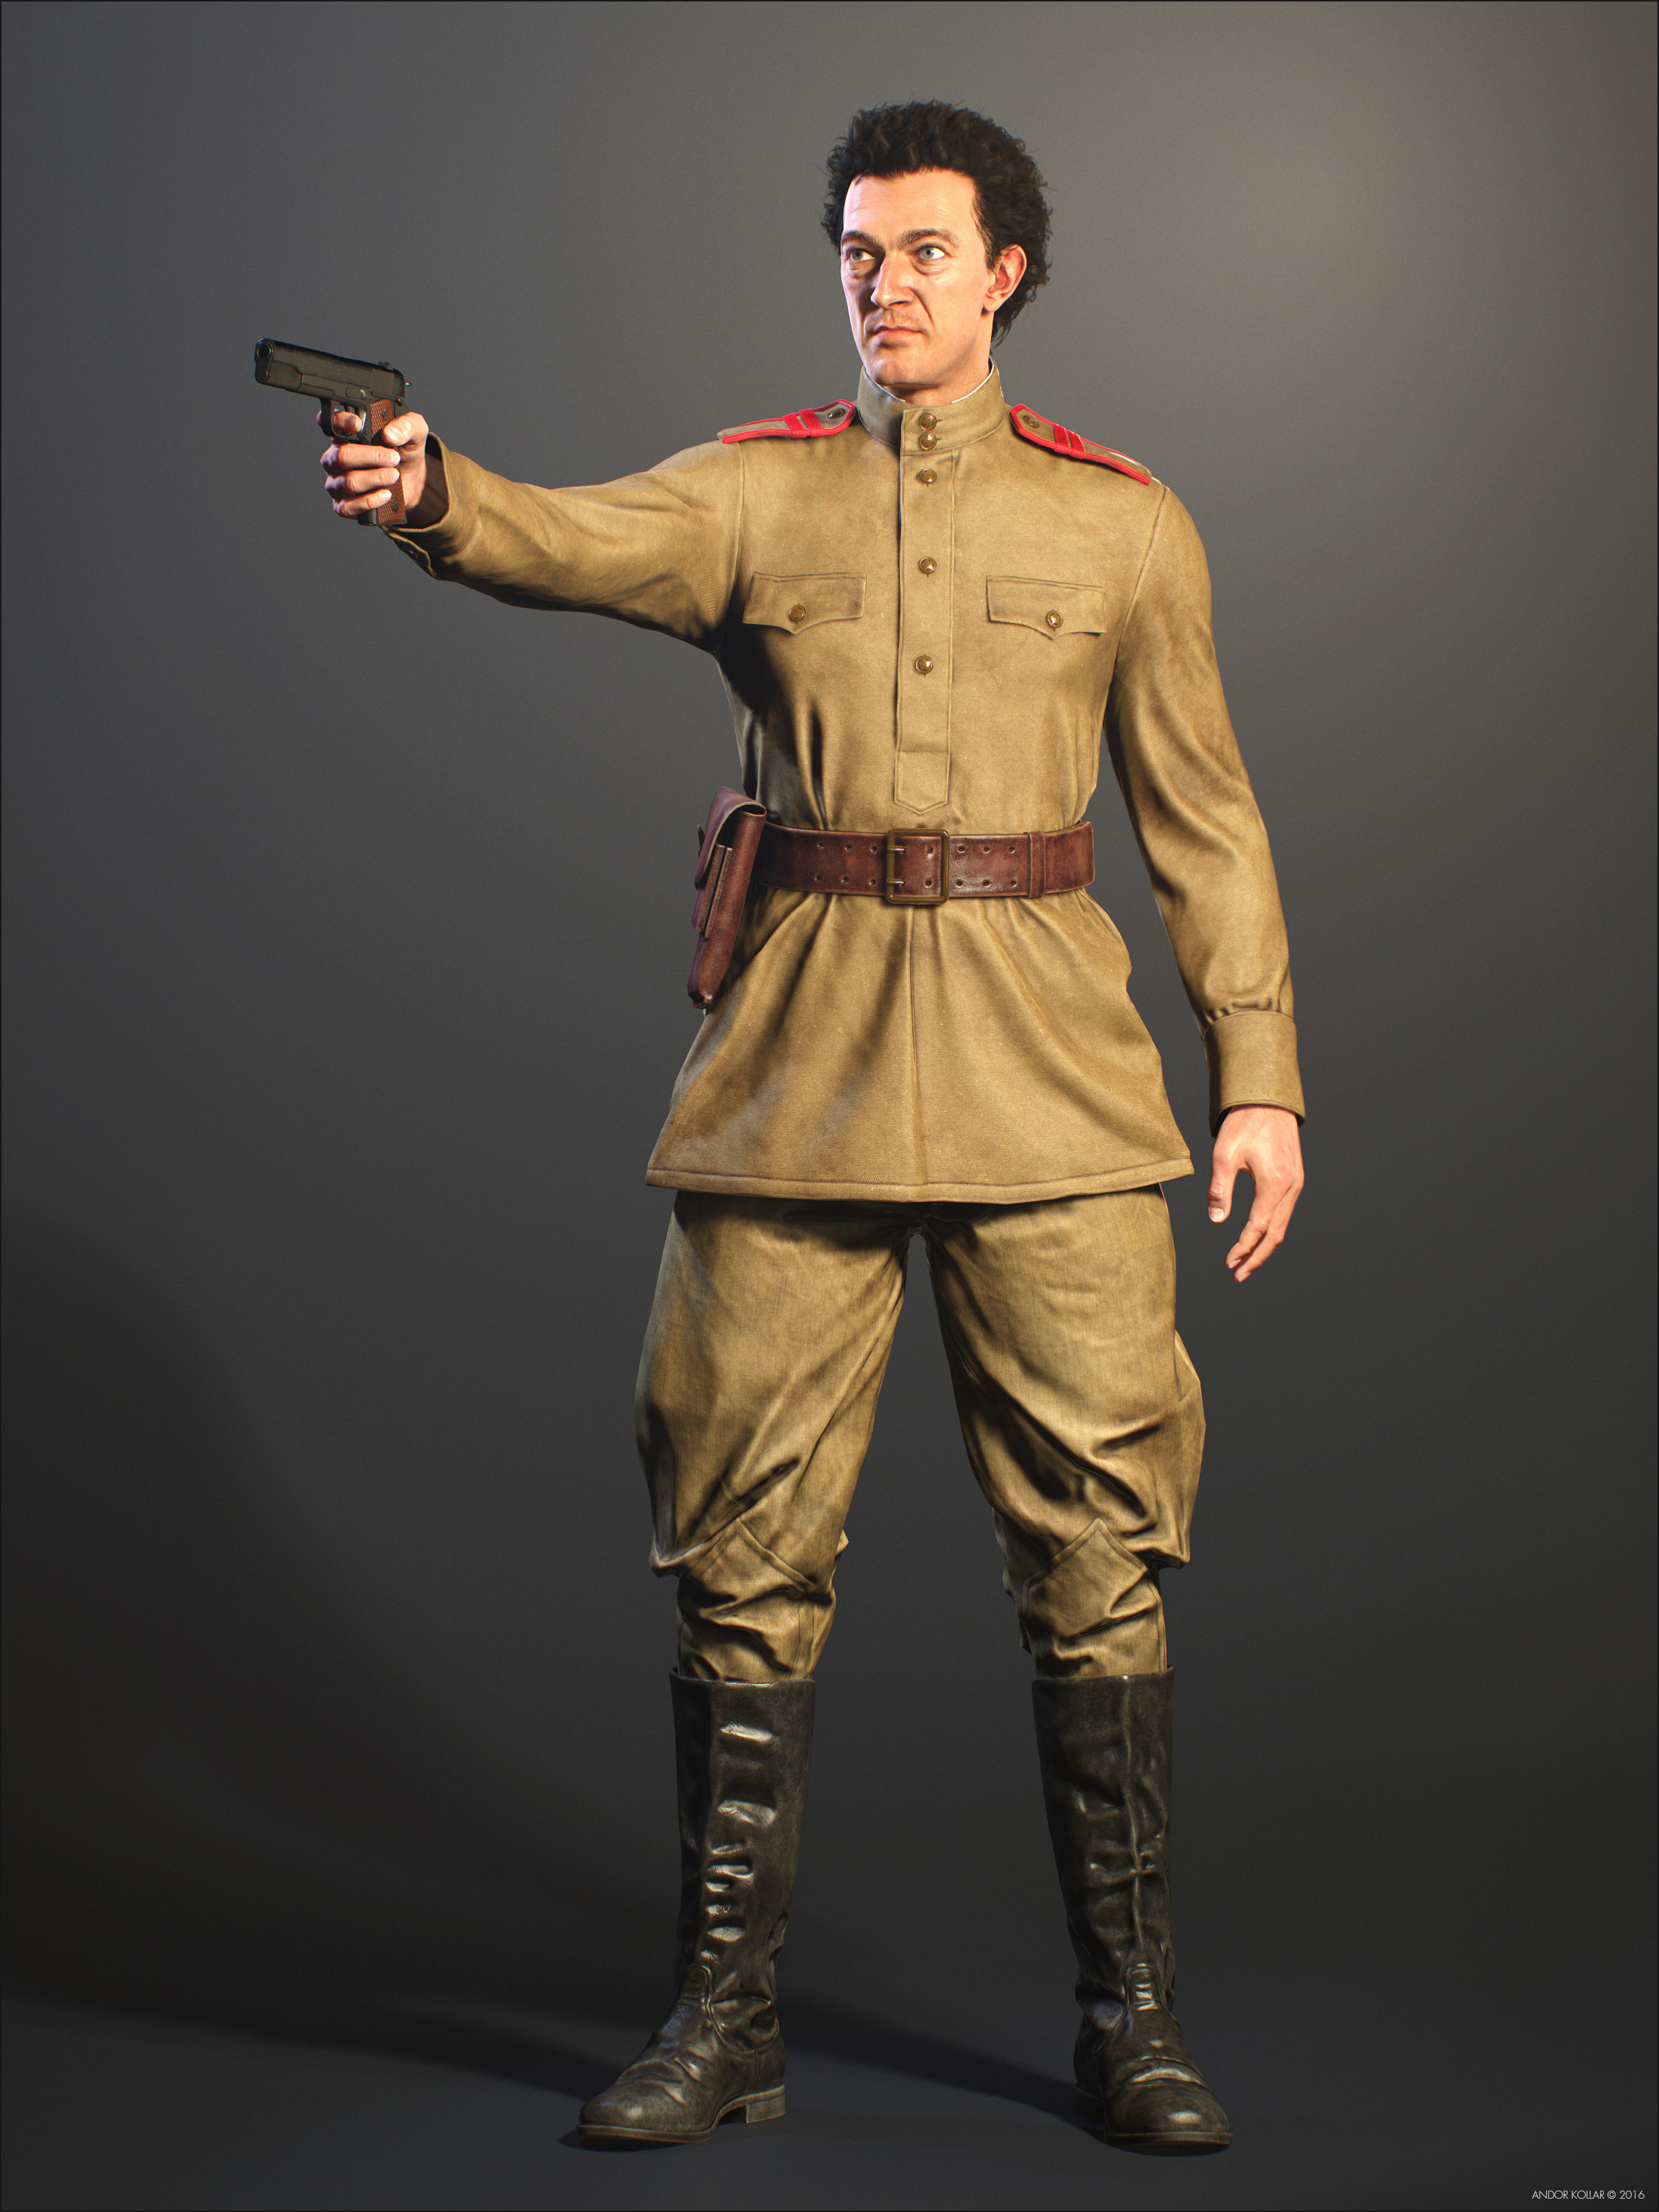 Vincent Cassel Soviet Soldier with a Gun in Hand